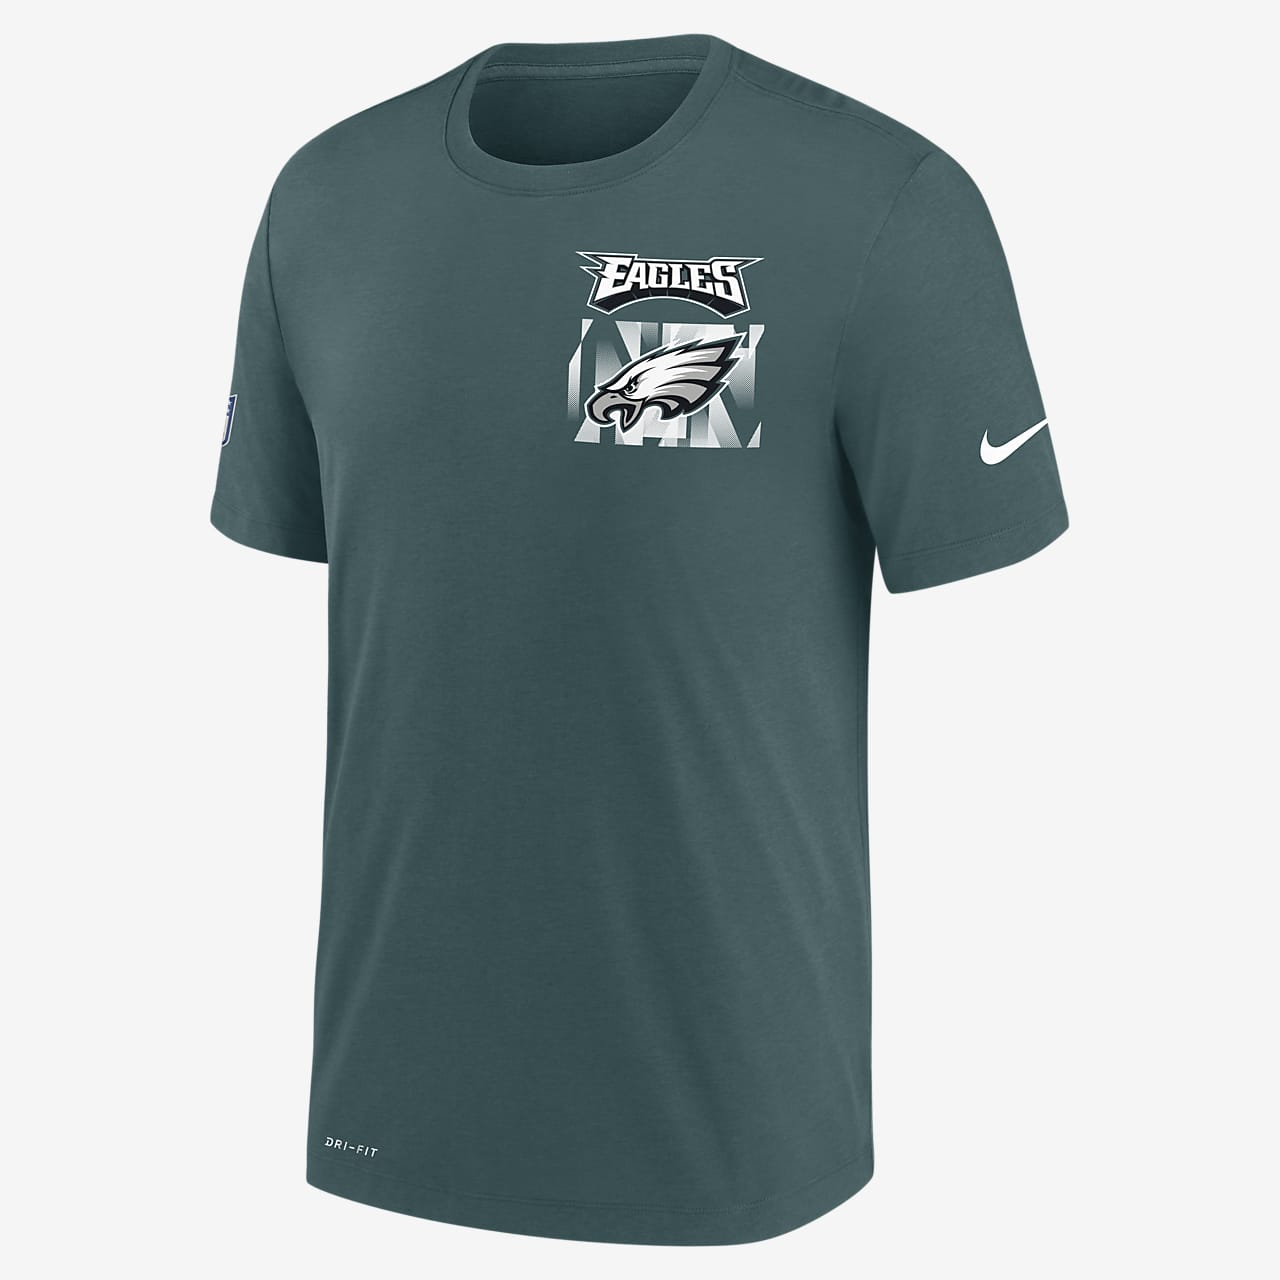 Nike Dri-FIT Facility (NFL Philadelphia Eagles) Men's T-Shirt. Nike.com